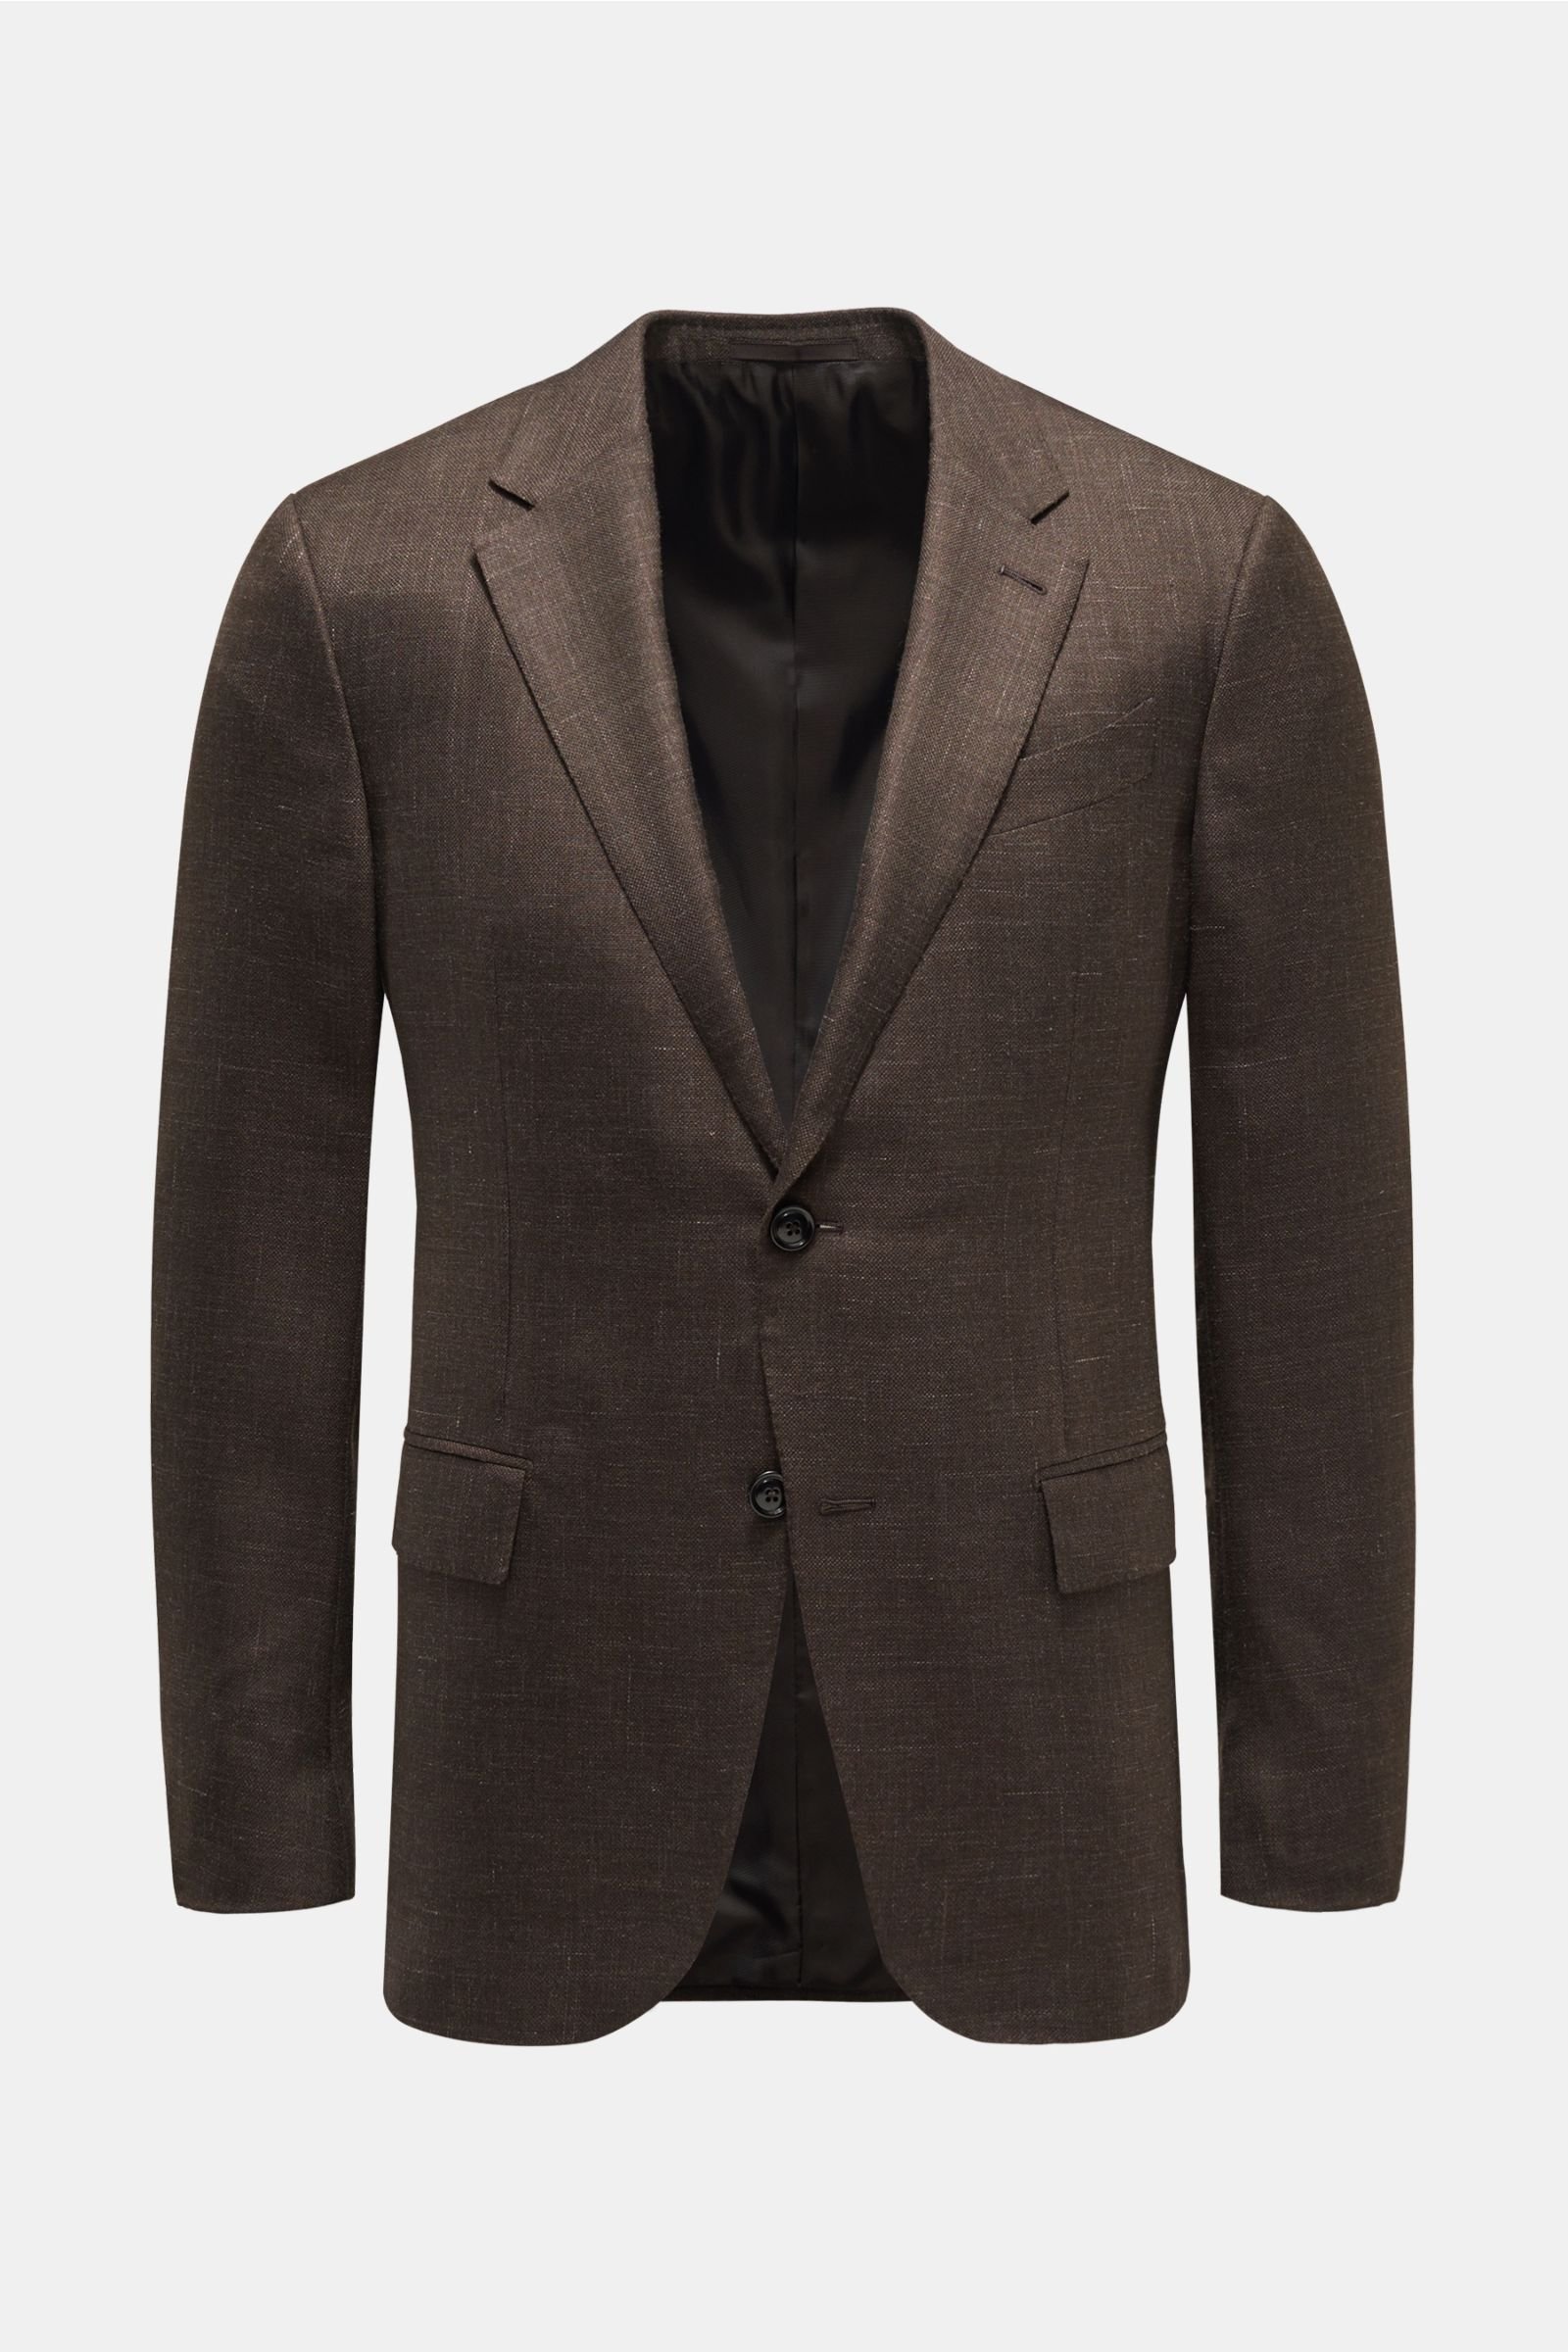 Smart-casual jacket 'Milano Easy' dark brown